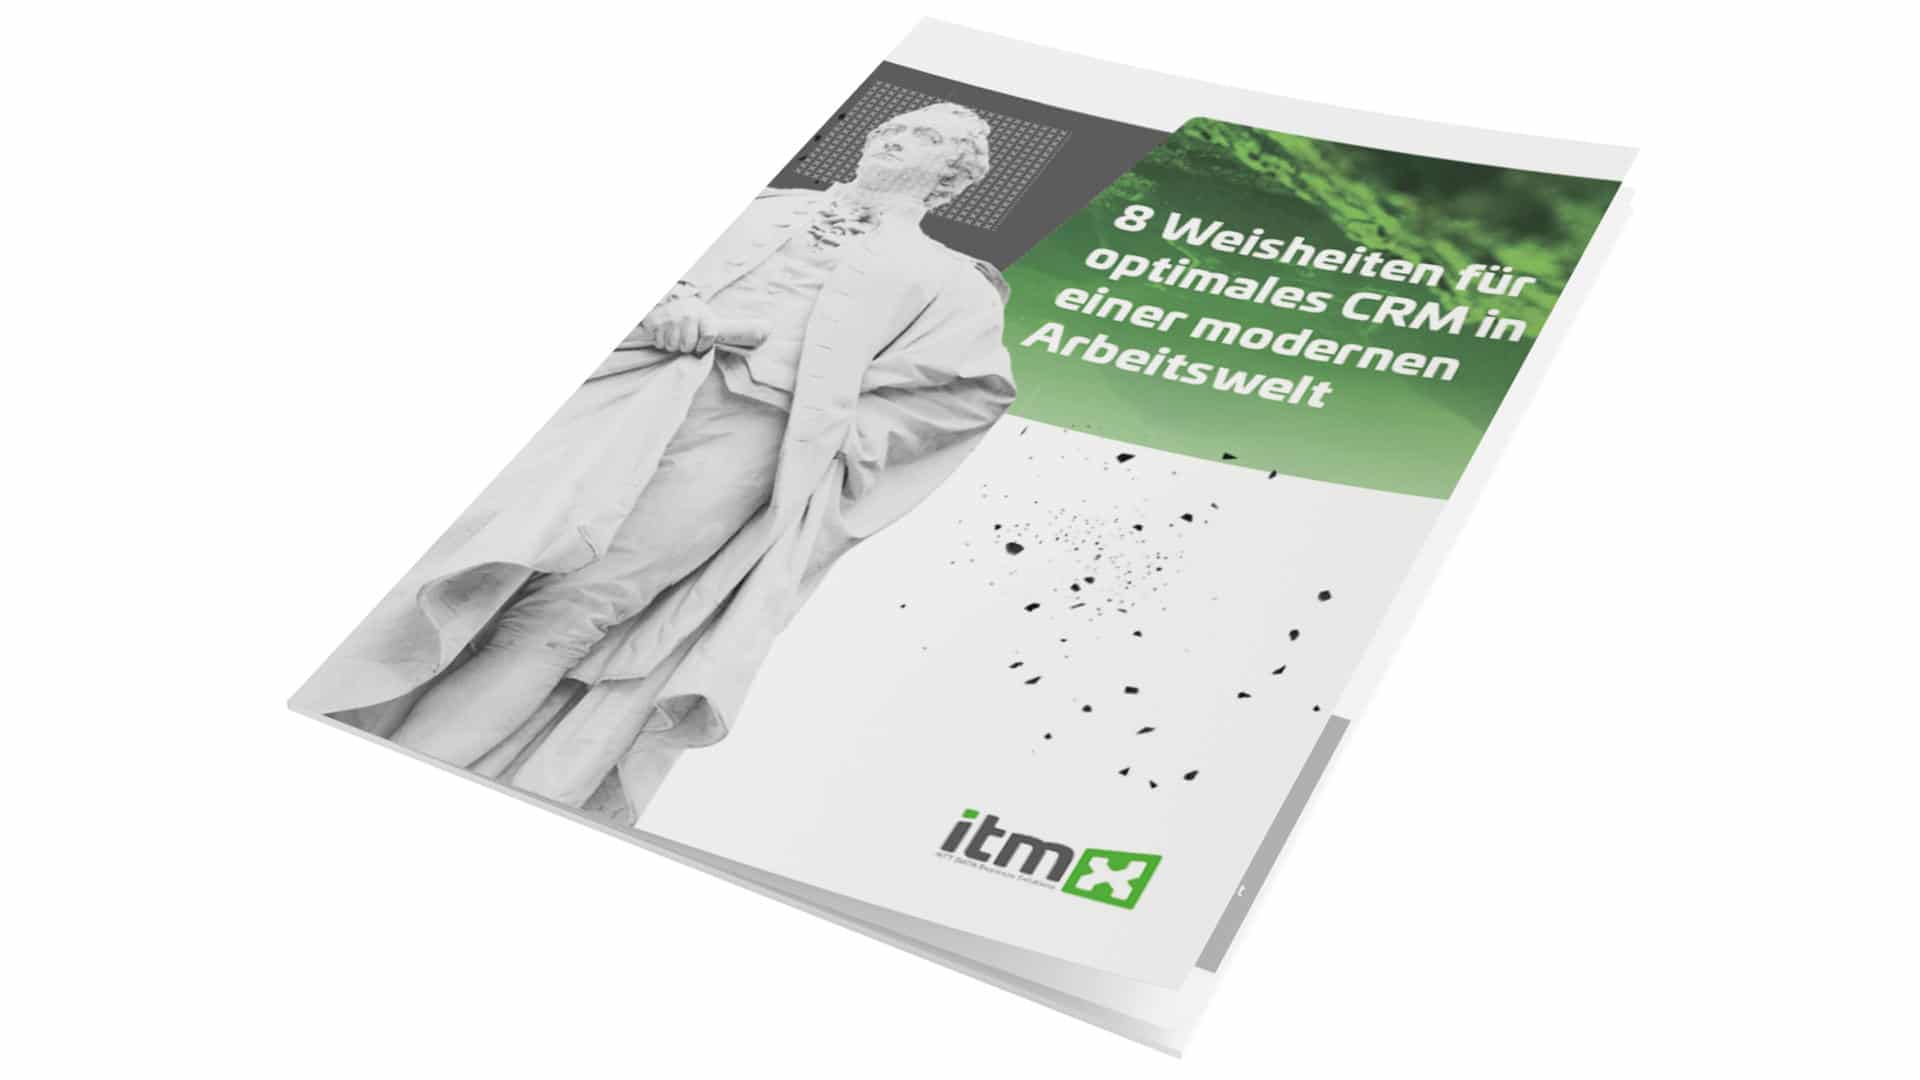 E-Book itmX: 8 wisdoms for optimal CRM in a modern working world; magazine aufgeschlagen